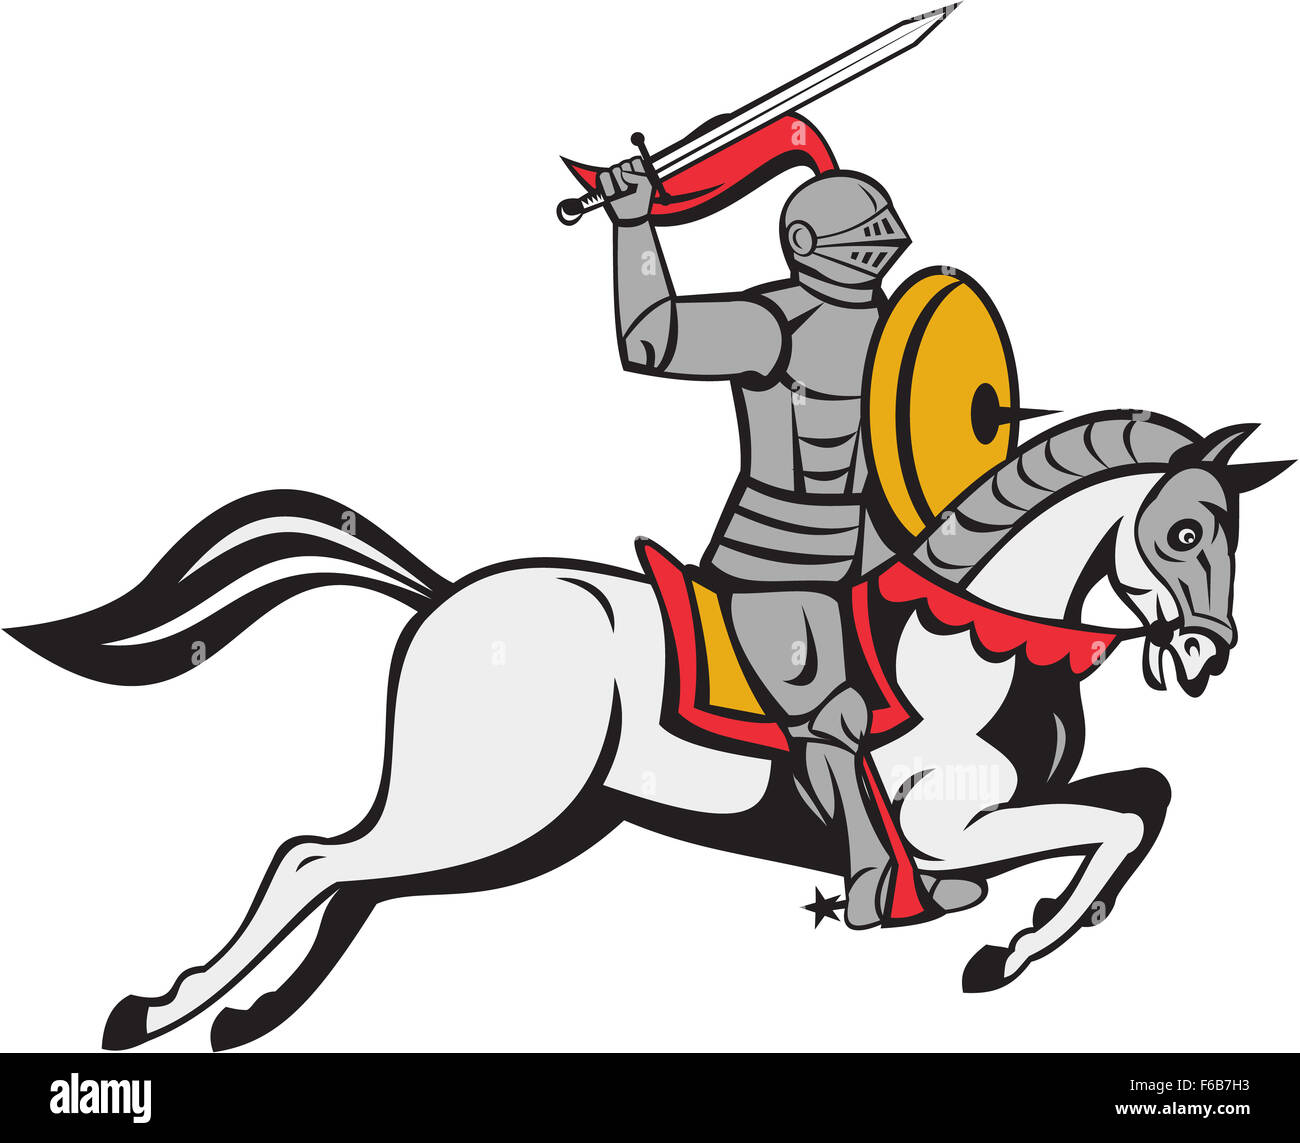 Cartoon style illustration d'un chevalier en armure complète tenant un sabre d'une part sur la tête et le bouclier de l'autre cheval de steed attaquer depuis le côté isolé sur fond blanc. Banque D'Images